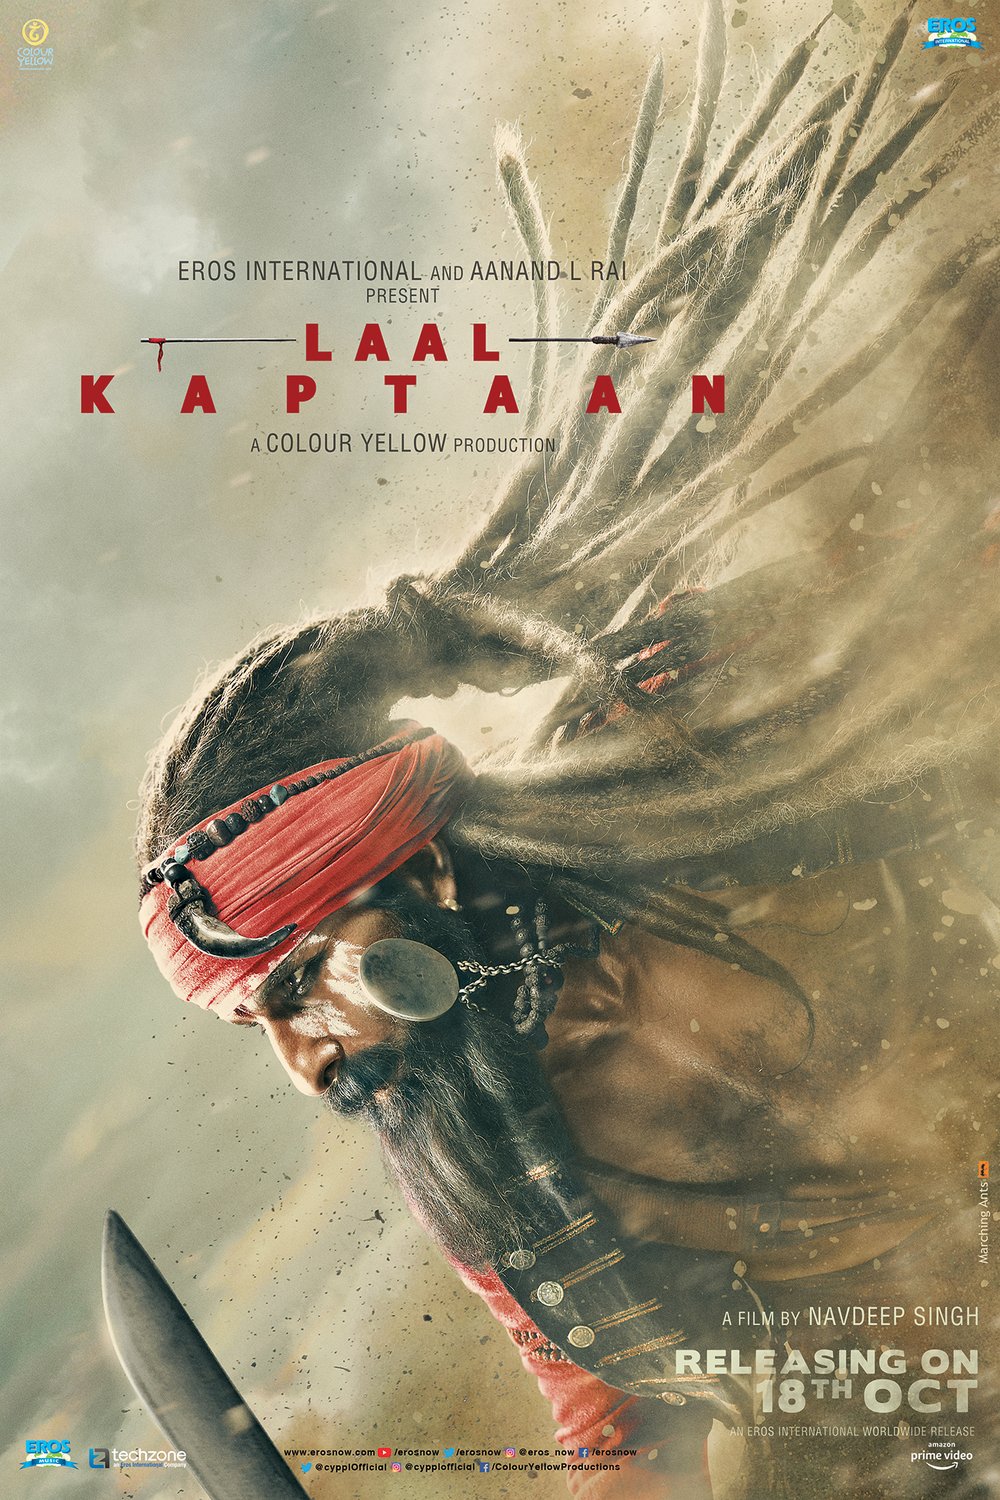 Hindi poster of the movie Laal Kaptaan